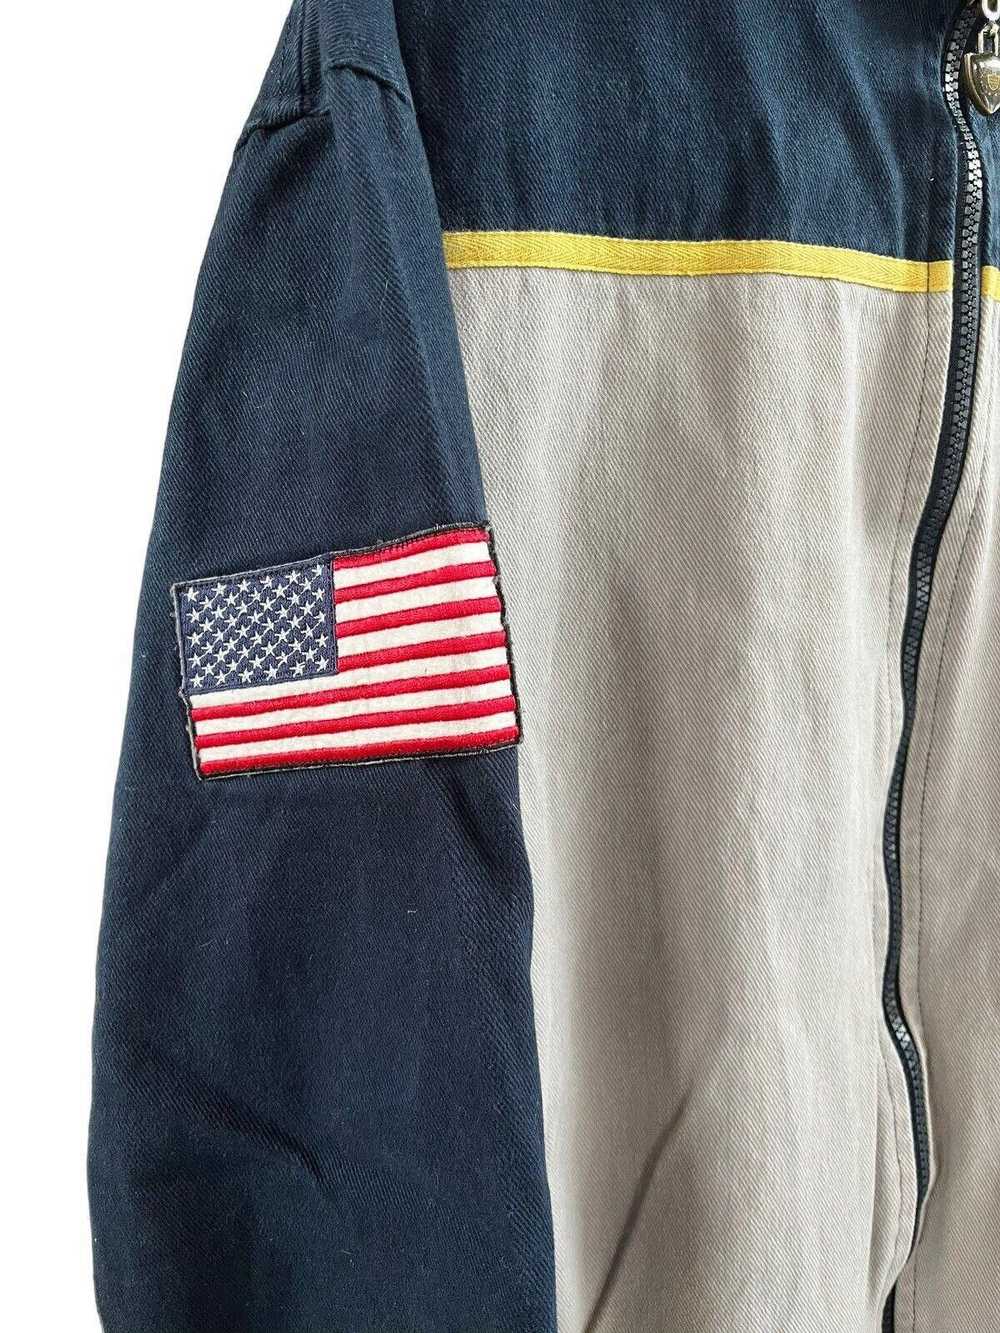 Designer 2011 Navy USA Reversible Jacket Men’s Me… - image 6